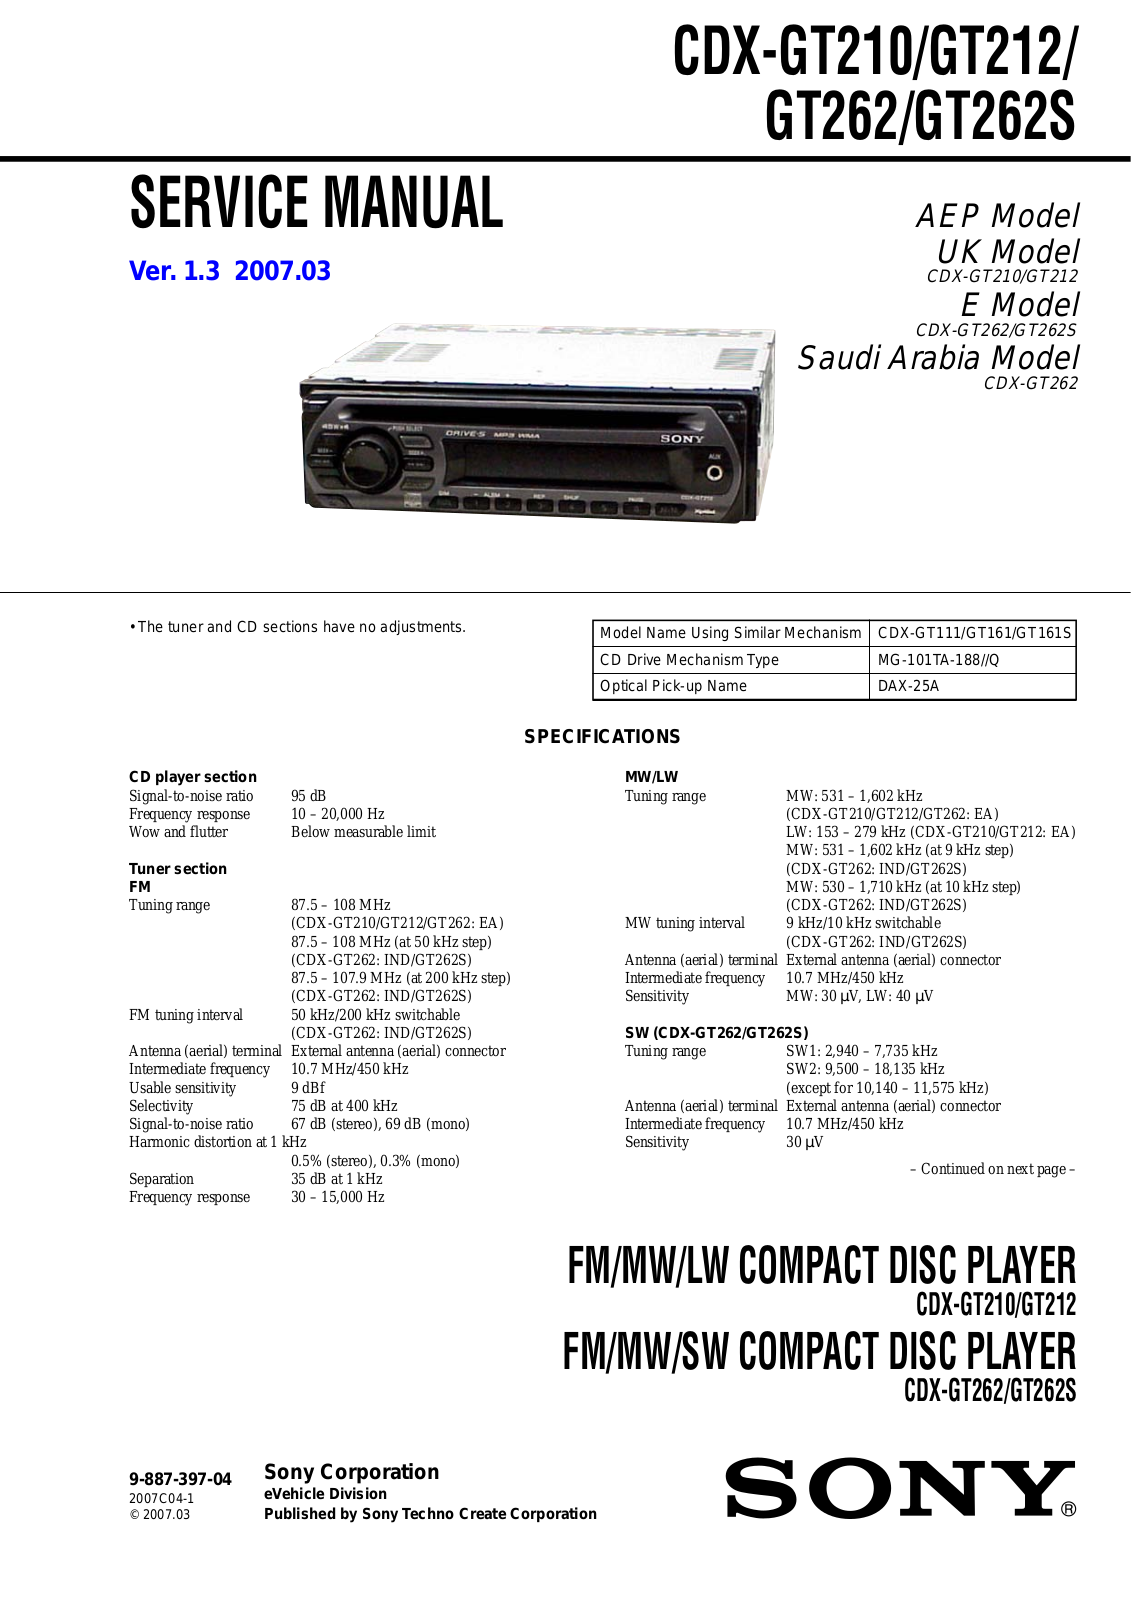 Sony CDX-GT210, CDX-GT212, CDX-GT262, CDX-GT262S Service Manual